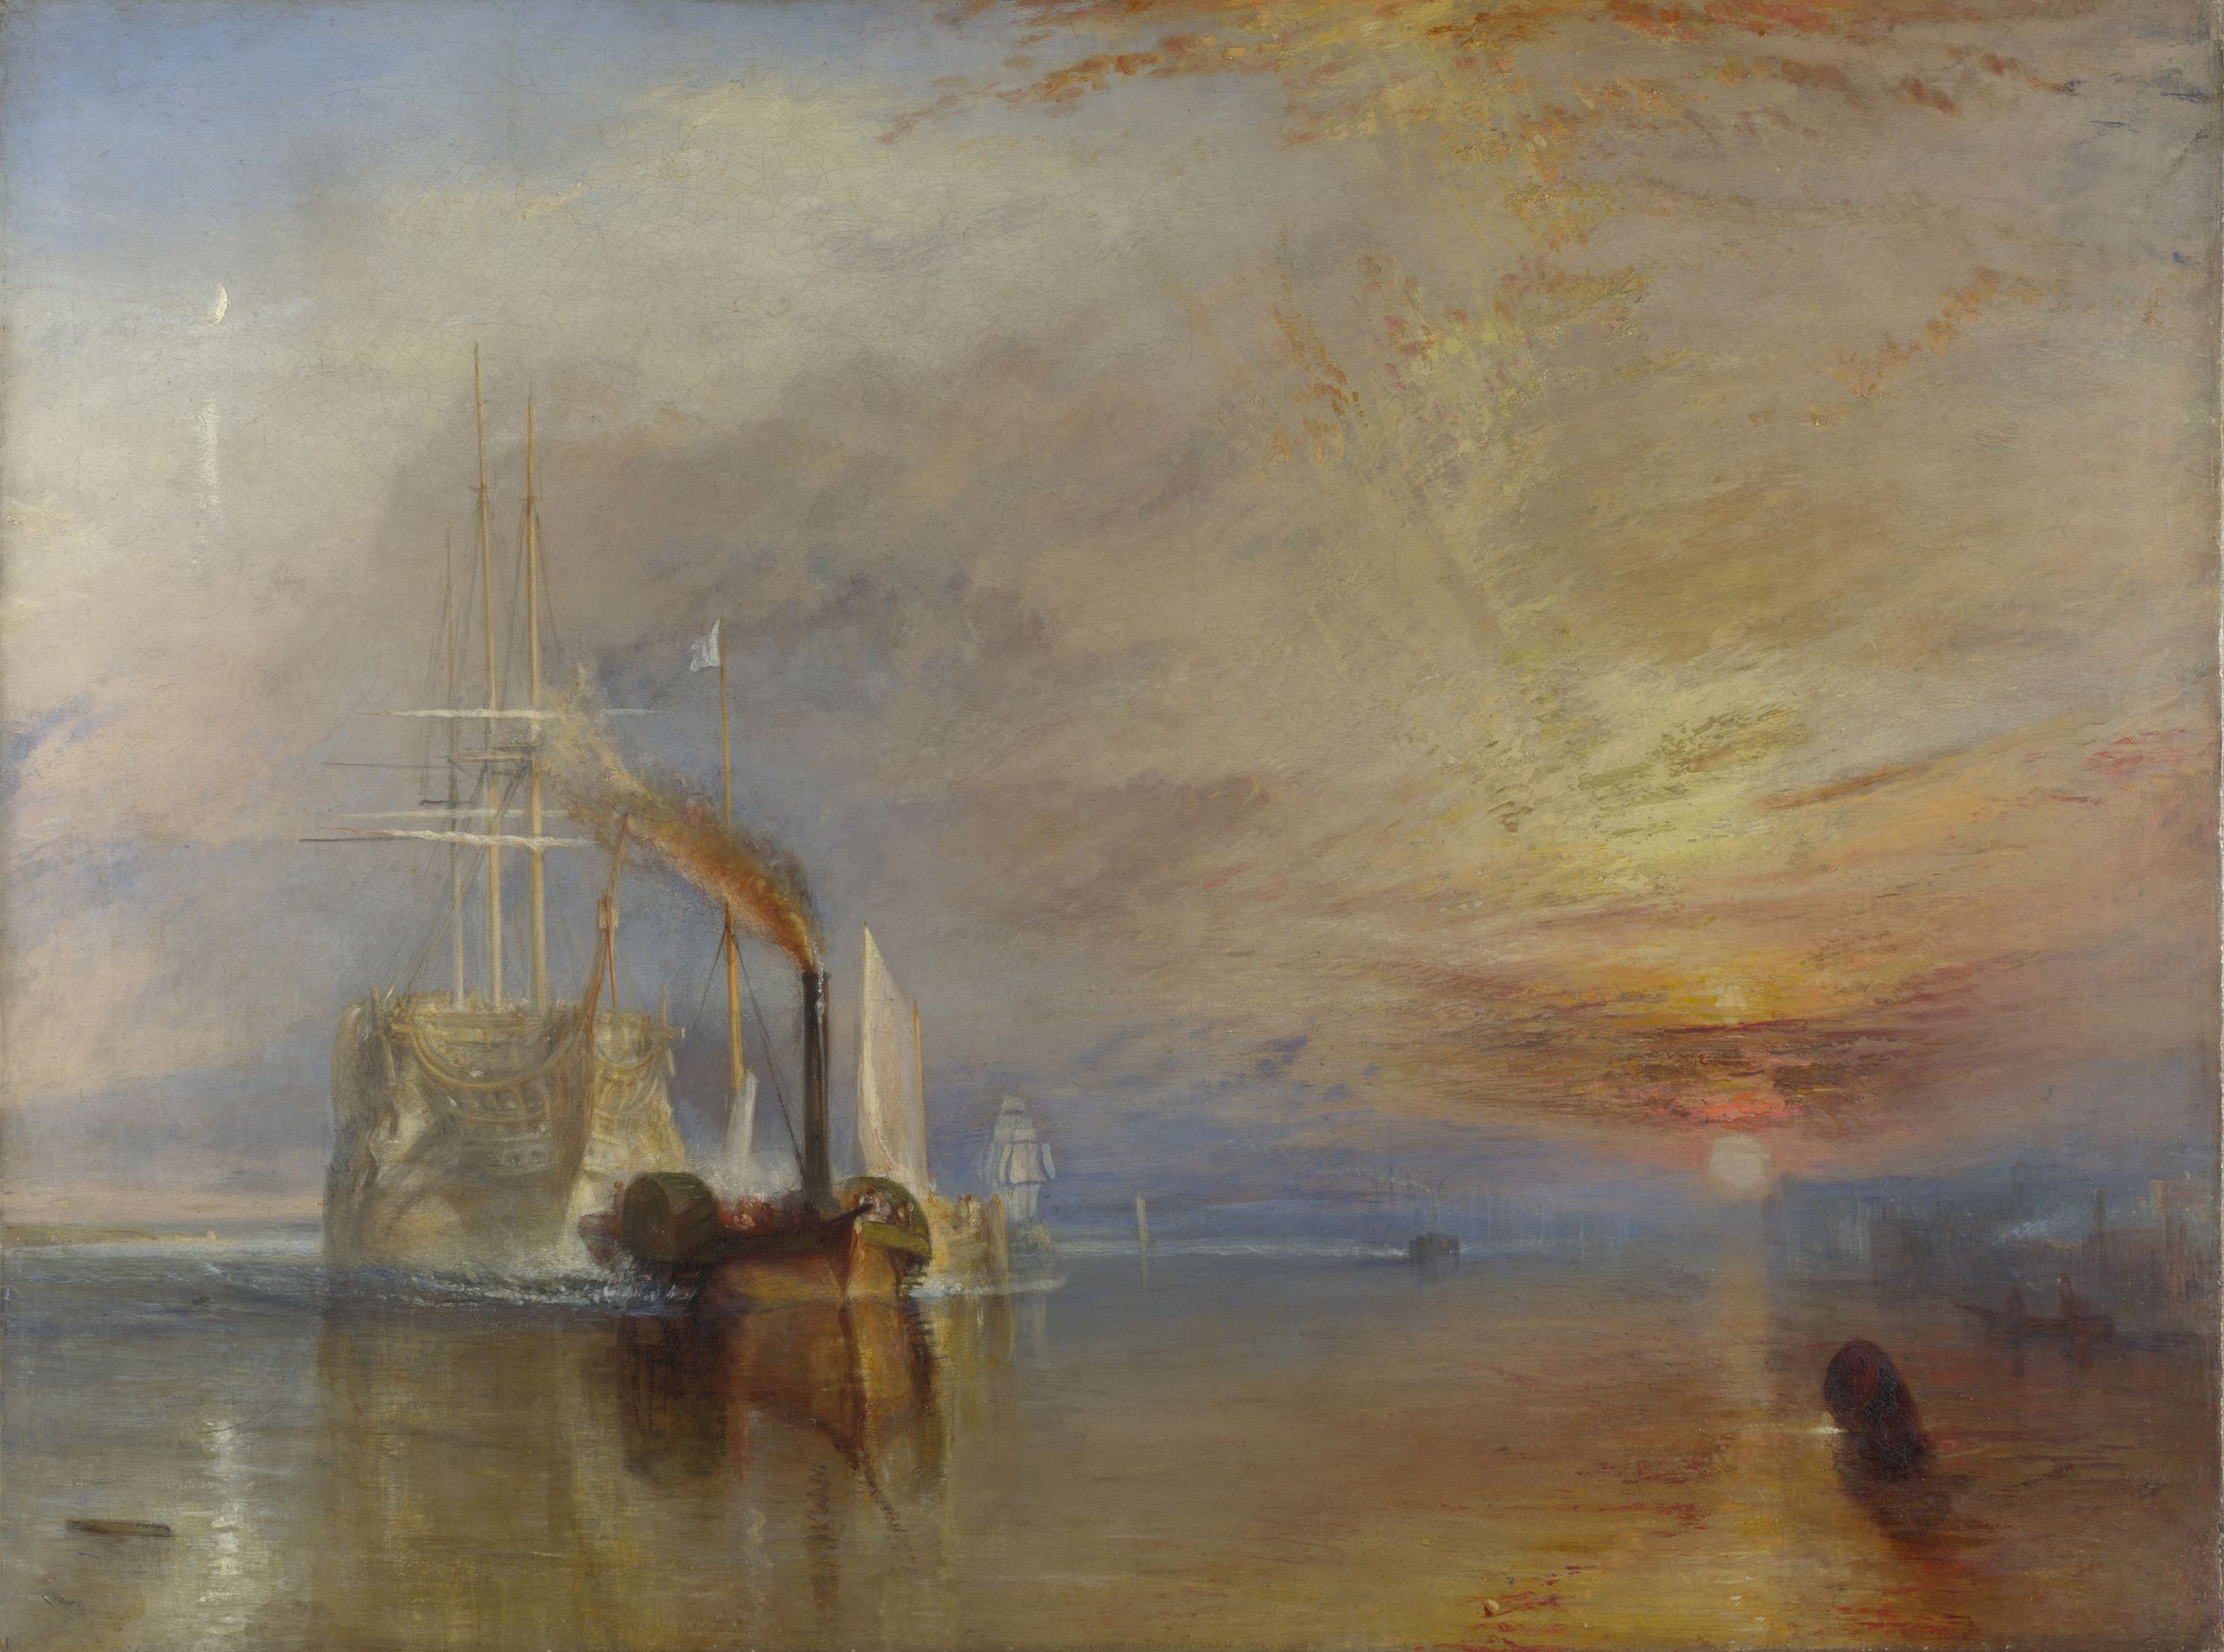 解体されるために最後の停泊地に曳かれて行く戦艦テメレール号 by Joseph Mallord William Turner - 1839年 - 91 cm x 1.22 m 